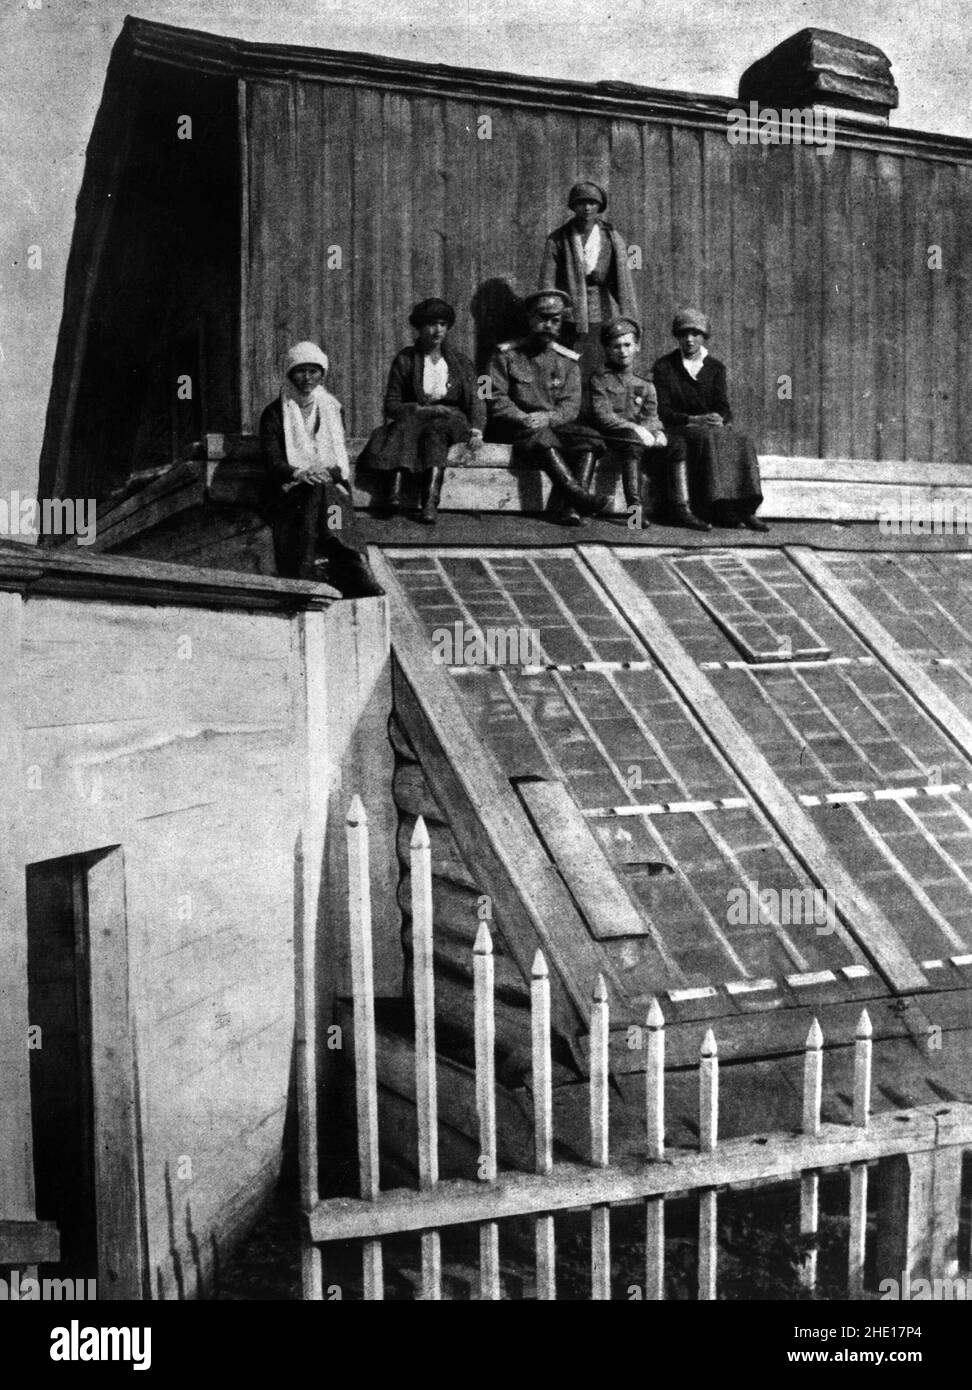 Le tsar Nicholas II et ses enfants assis sur le toit d'un conservatoire alors qu'ils sont en exil au palais Alexandre (Tsarskoye Selo) près de Topolsk avant d'être transférés à Ekatrinberg (Sverdlovsk) pour leur emprisonnement et leur exécution finale. Banque D'Images